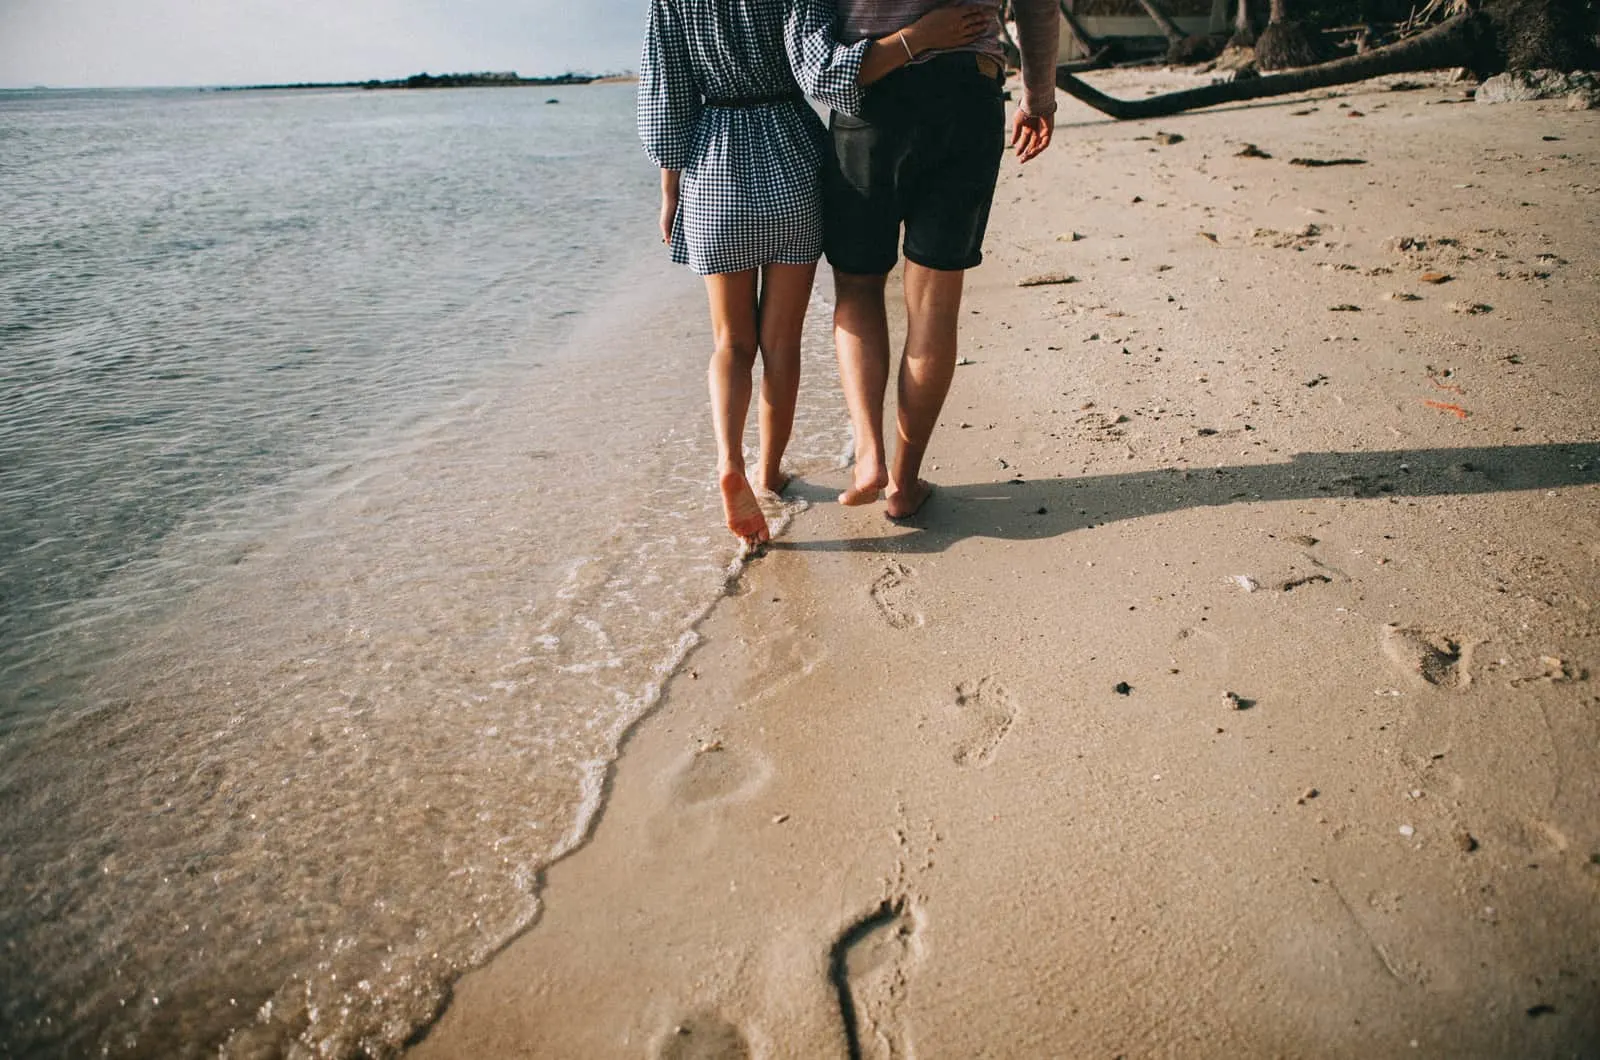 Paar geht am Strand spazieren